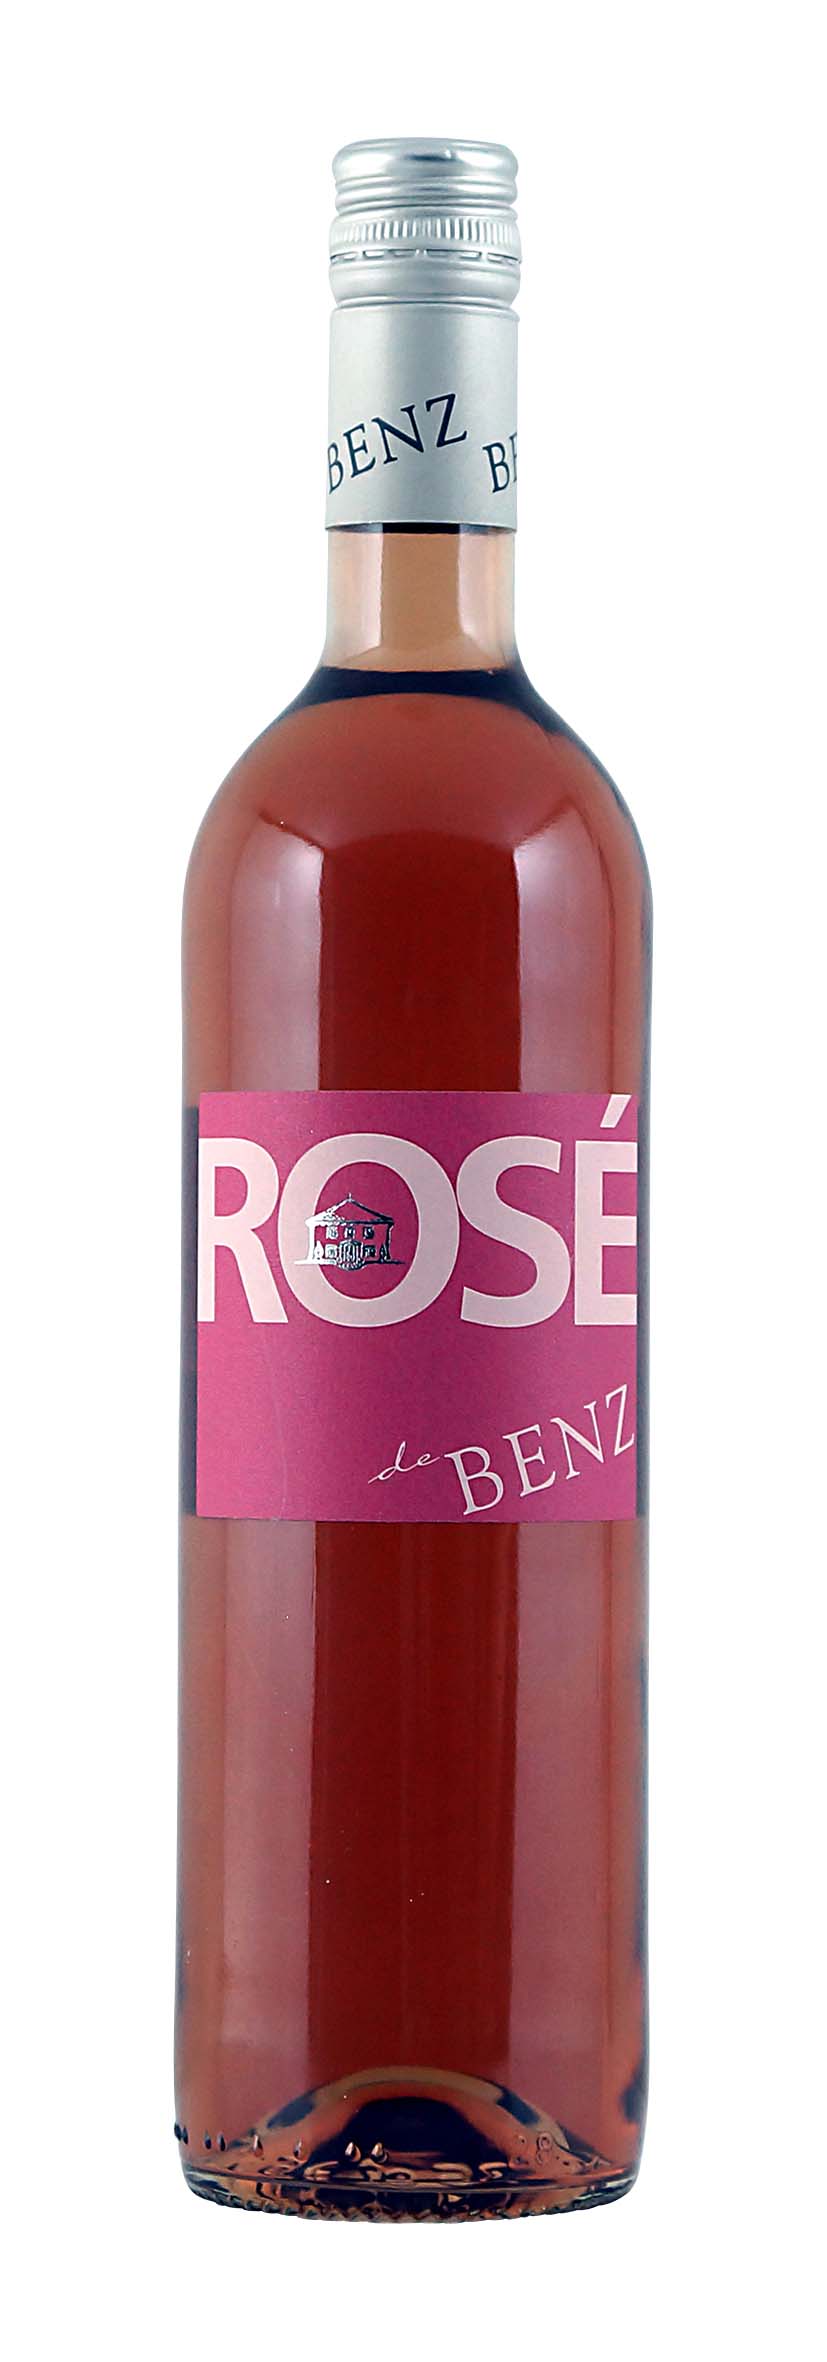 Cuvée trocken Rosé de Benz 2013